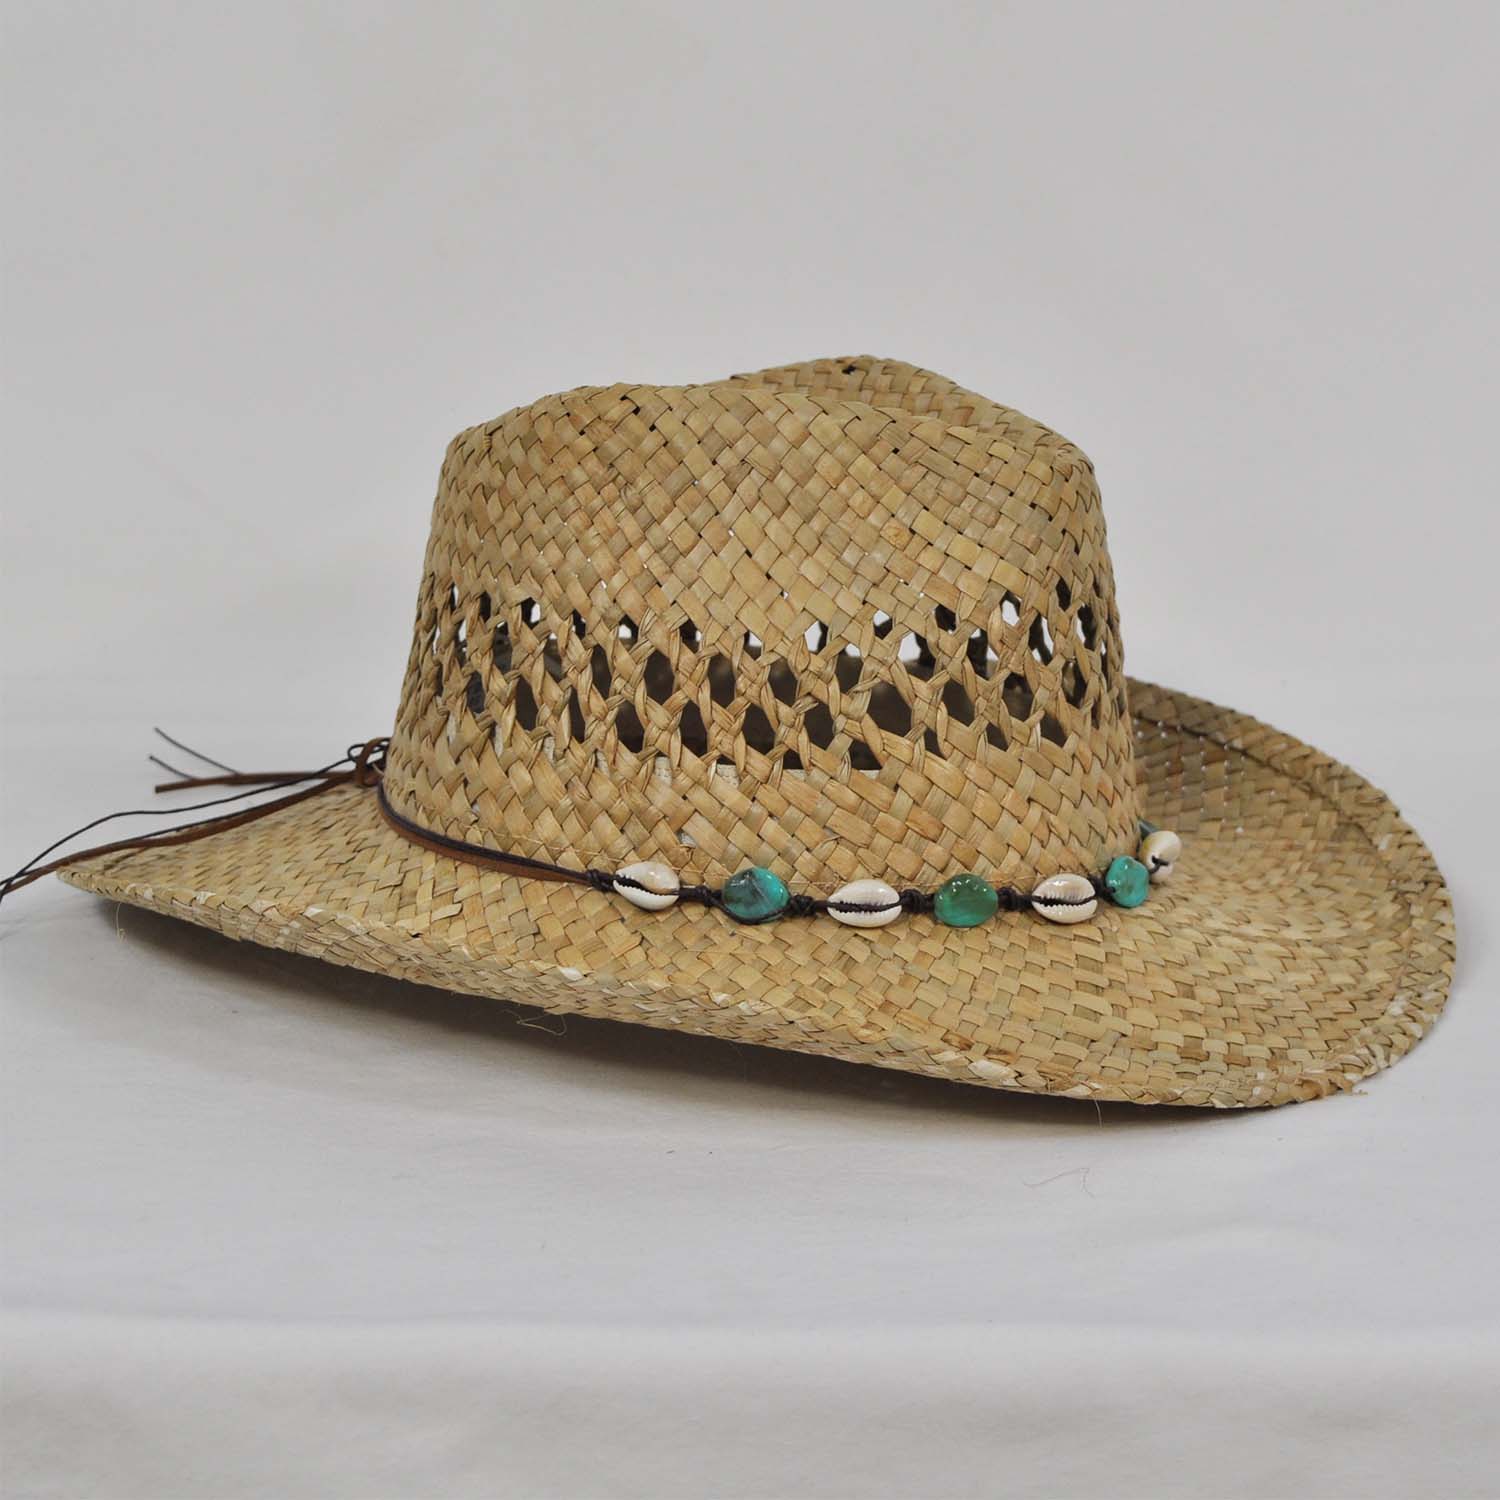 Sombrero conchas turquesa